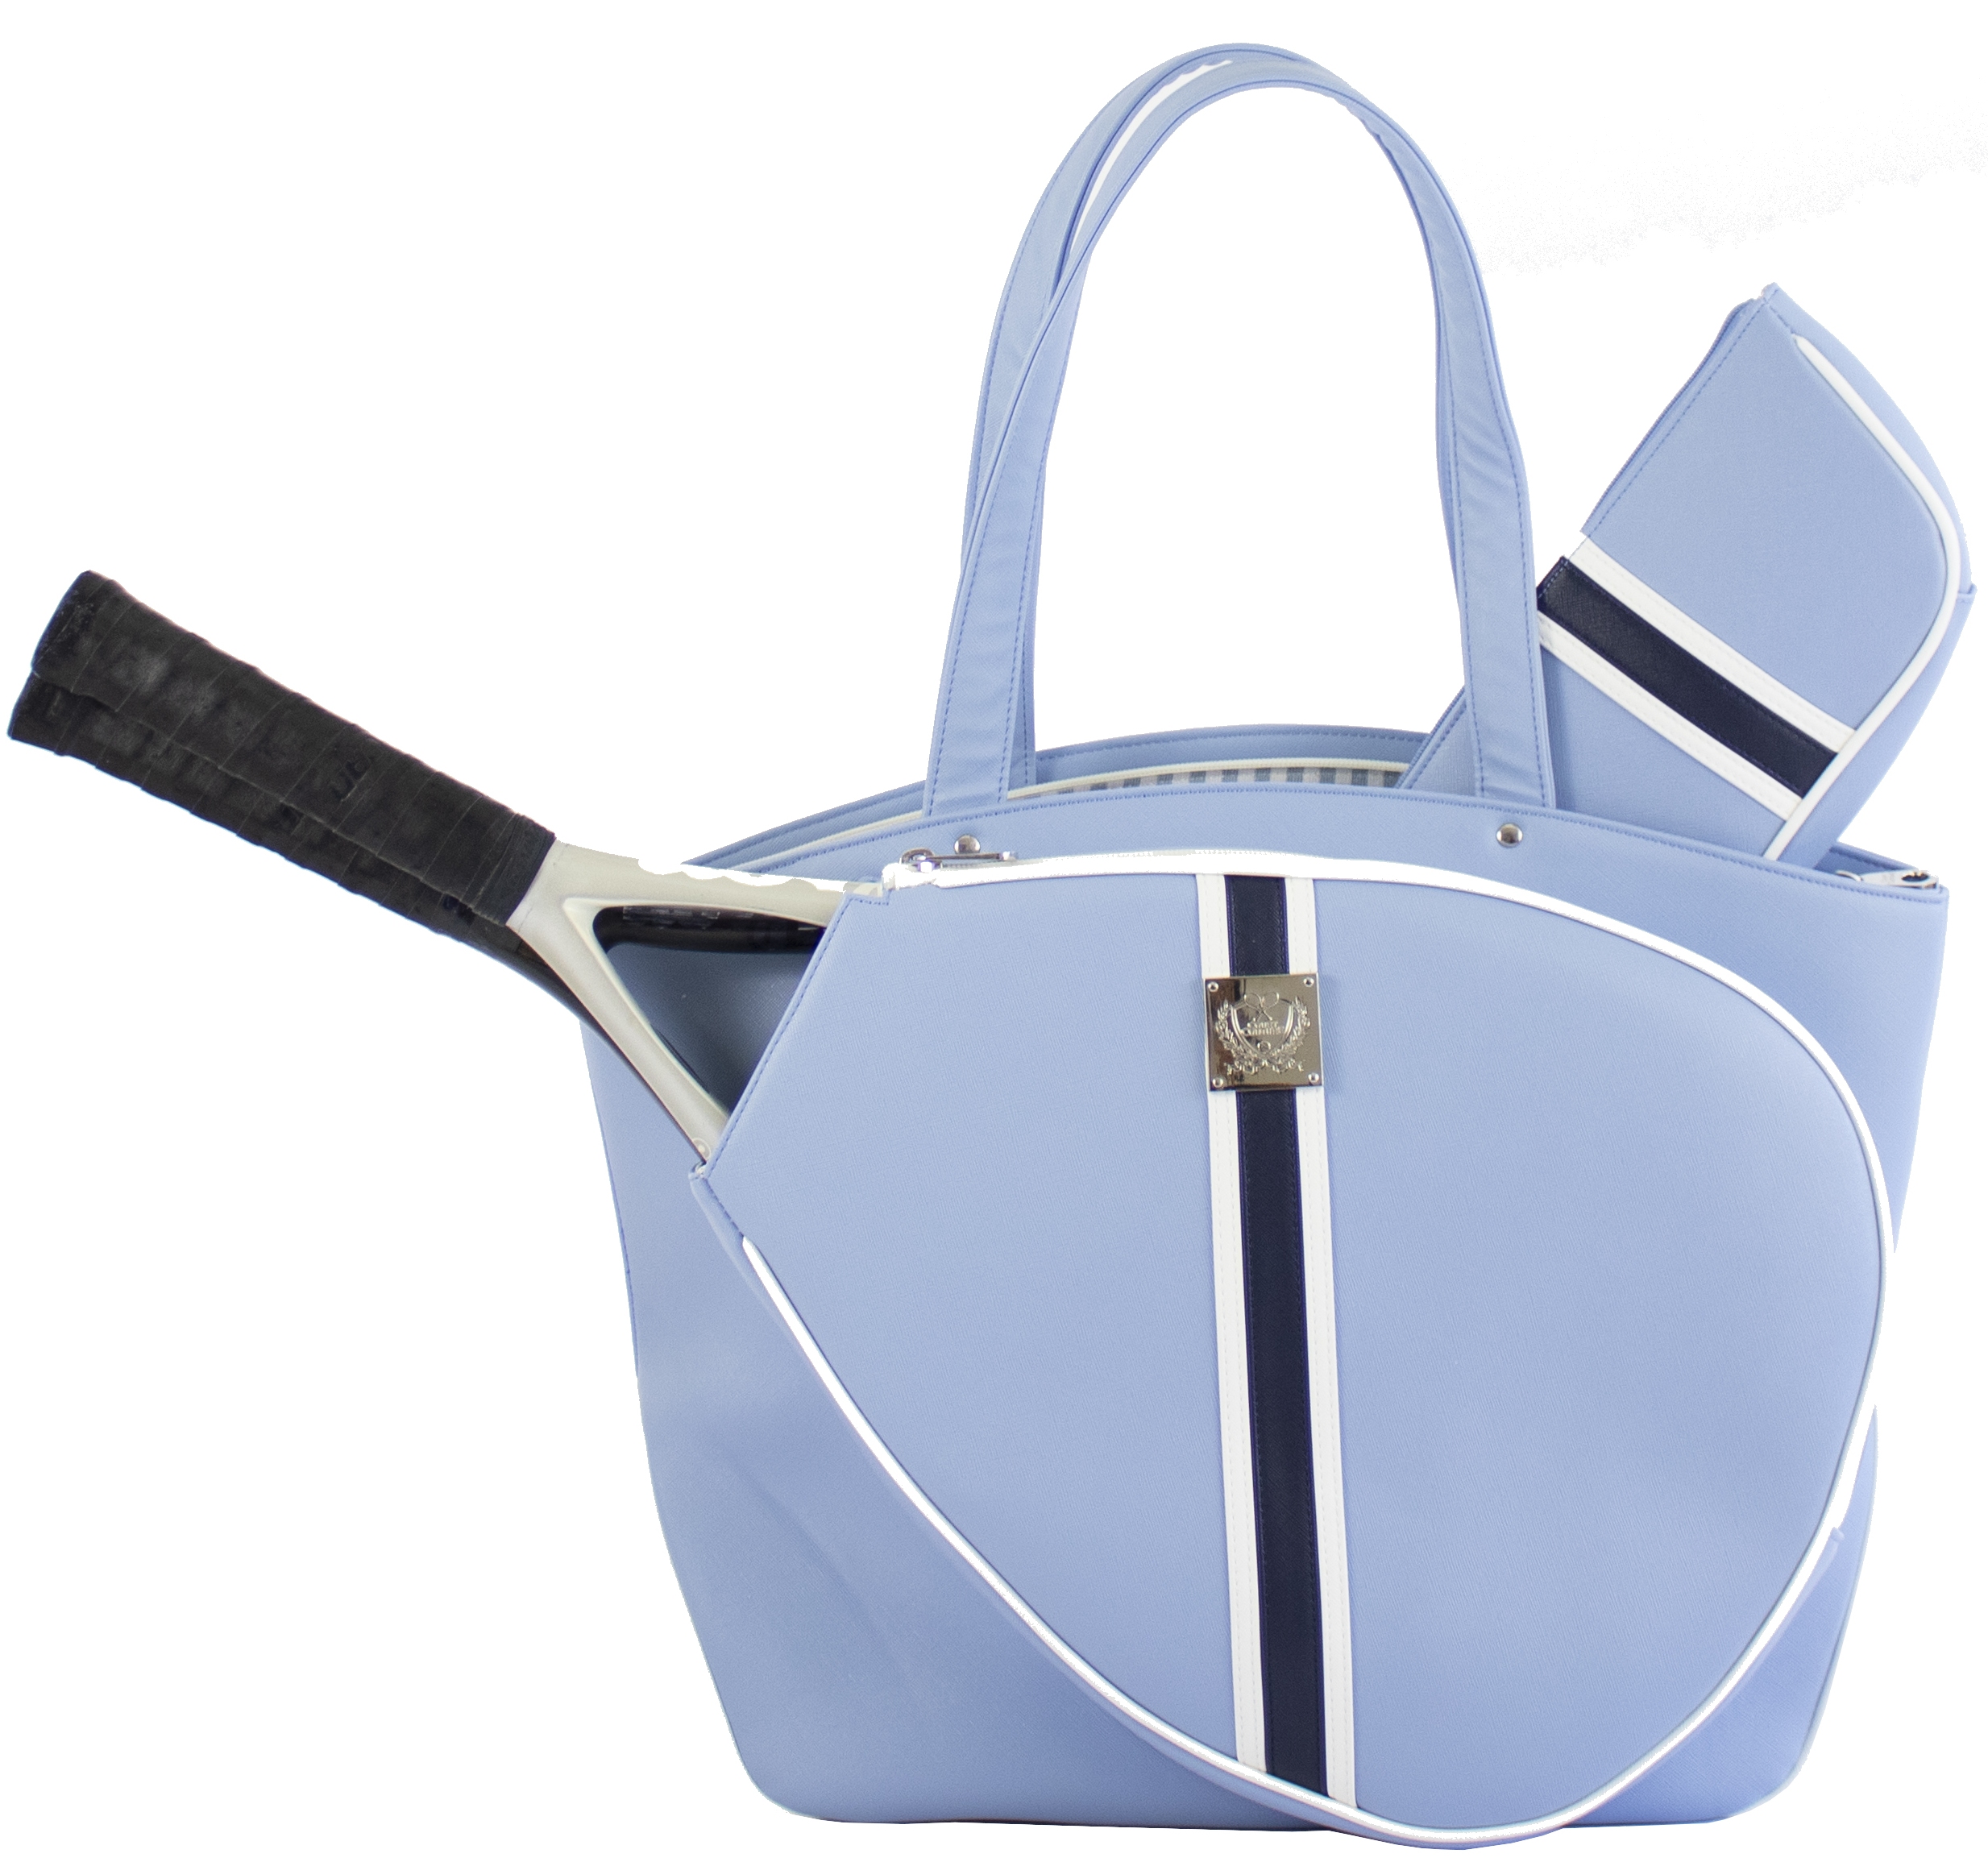 Court Couture Cassanova Tennis Bag (Striped Sky Blue)